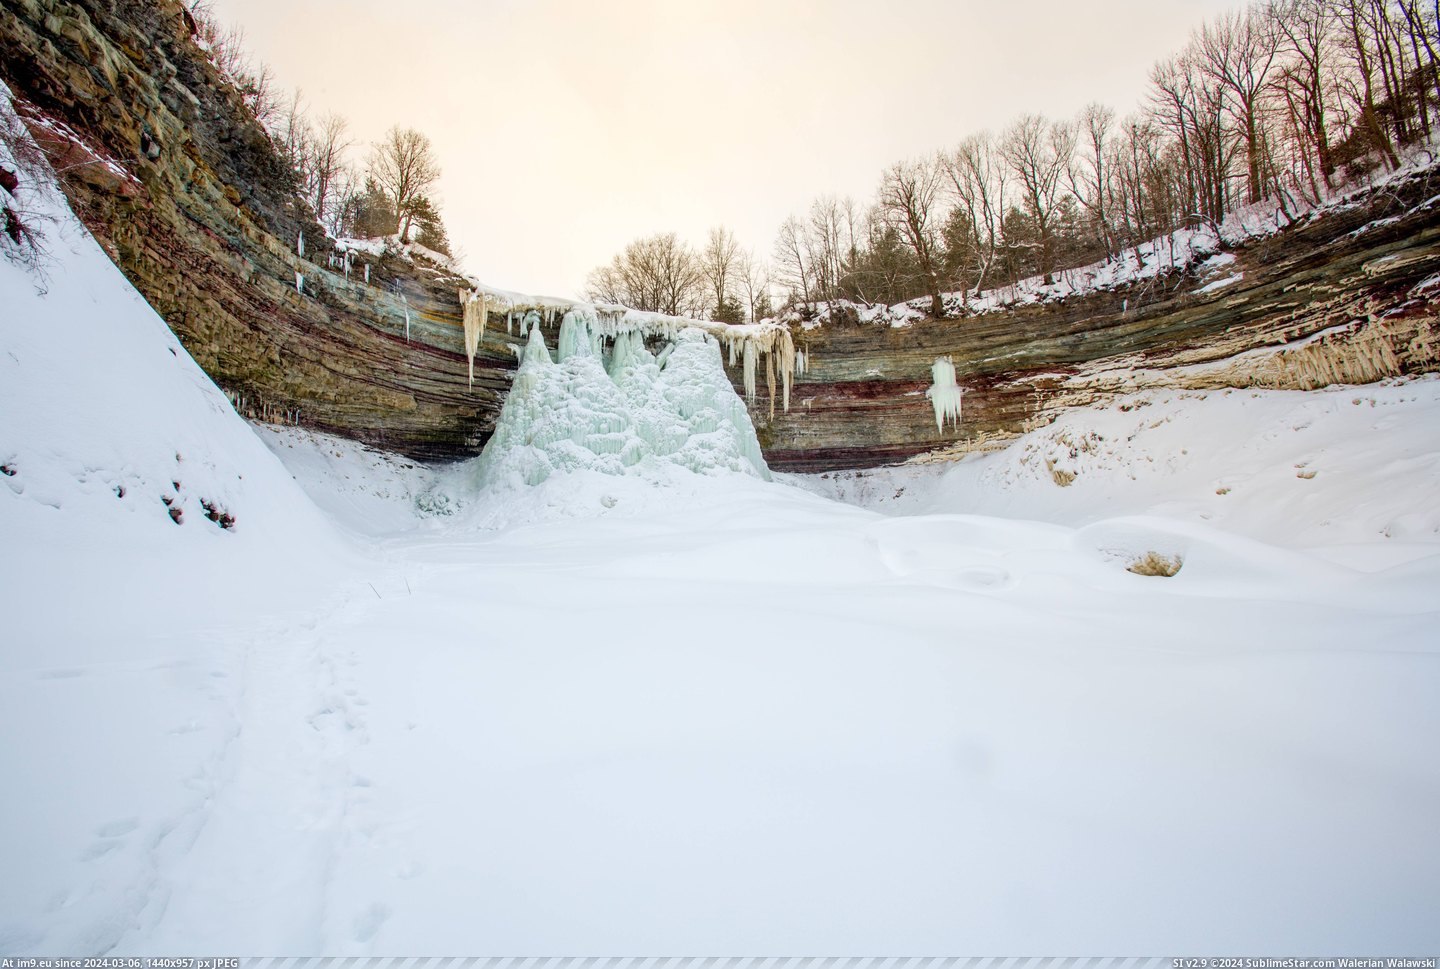 #Falls #Ontario #Southern #Frozen #Balls [Earthporn] Frozen Balls Falls, Southern Ontario  [5459x3639] Pic. (Bild von album My r/EARTHPORN favs))